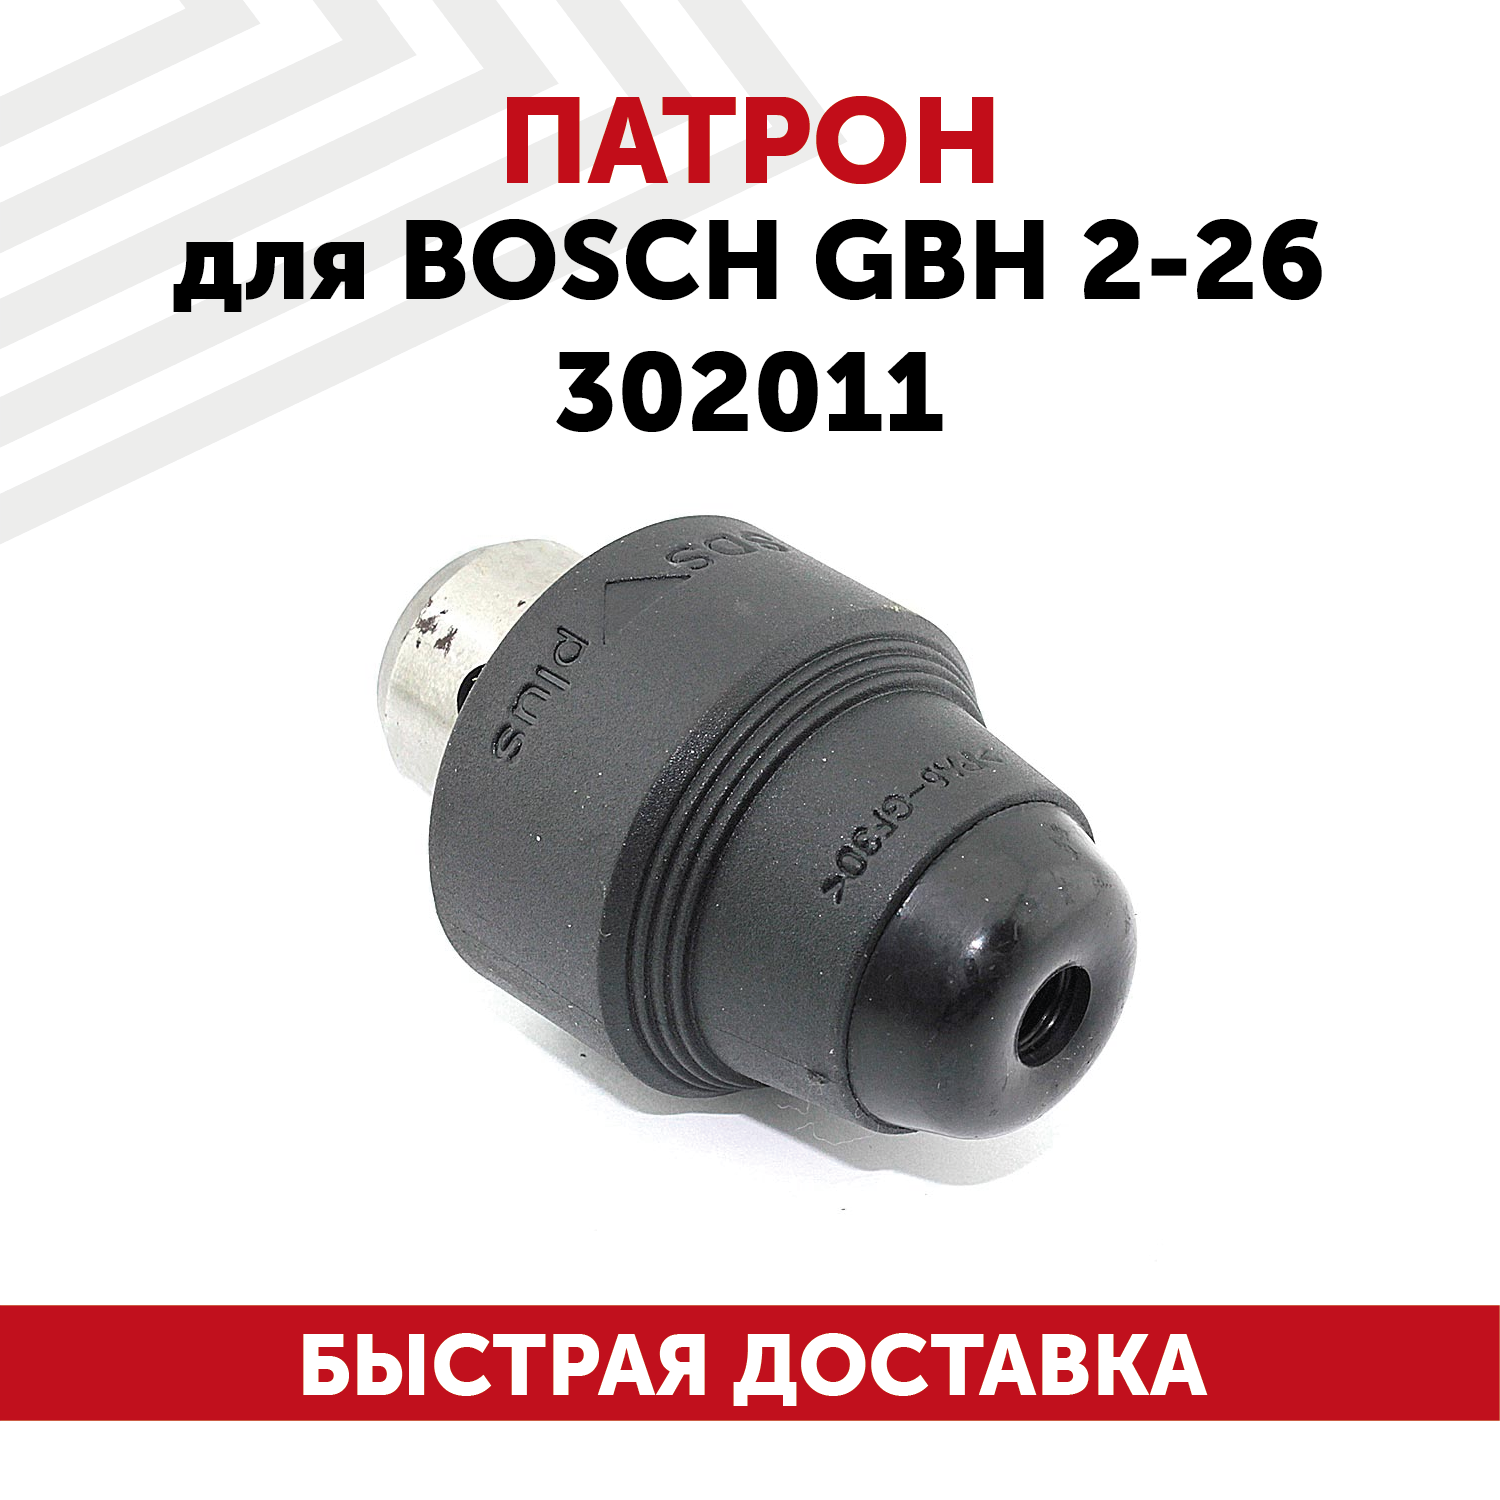 Патрон для электроинструента Bosch GBH 2-26 302011